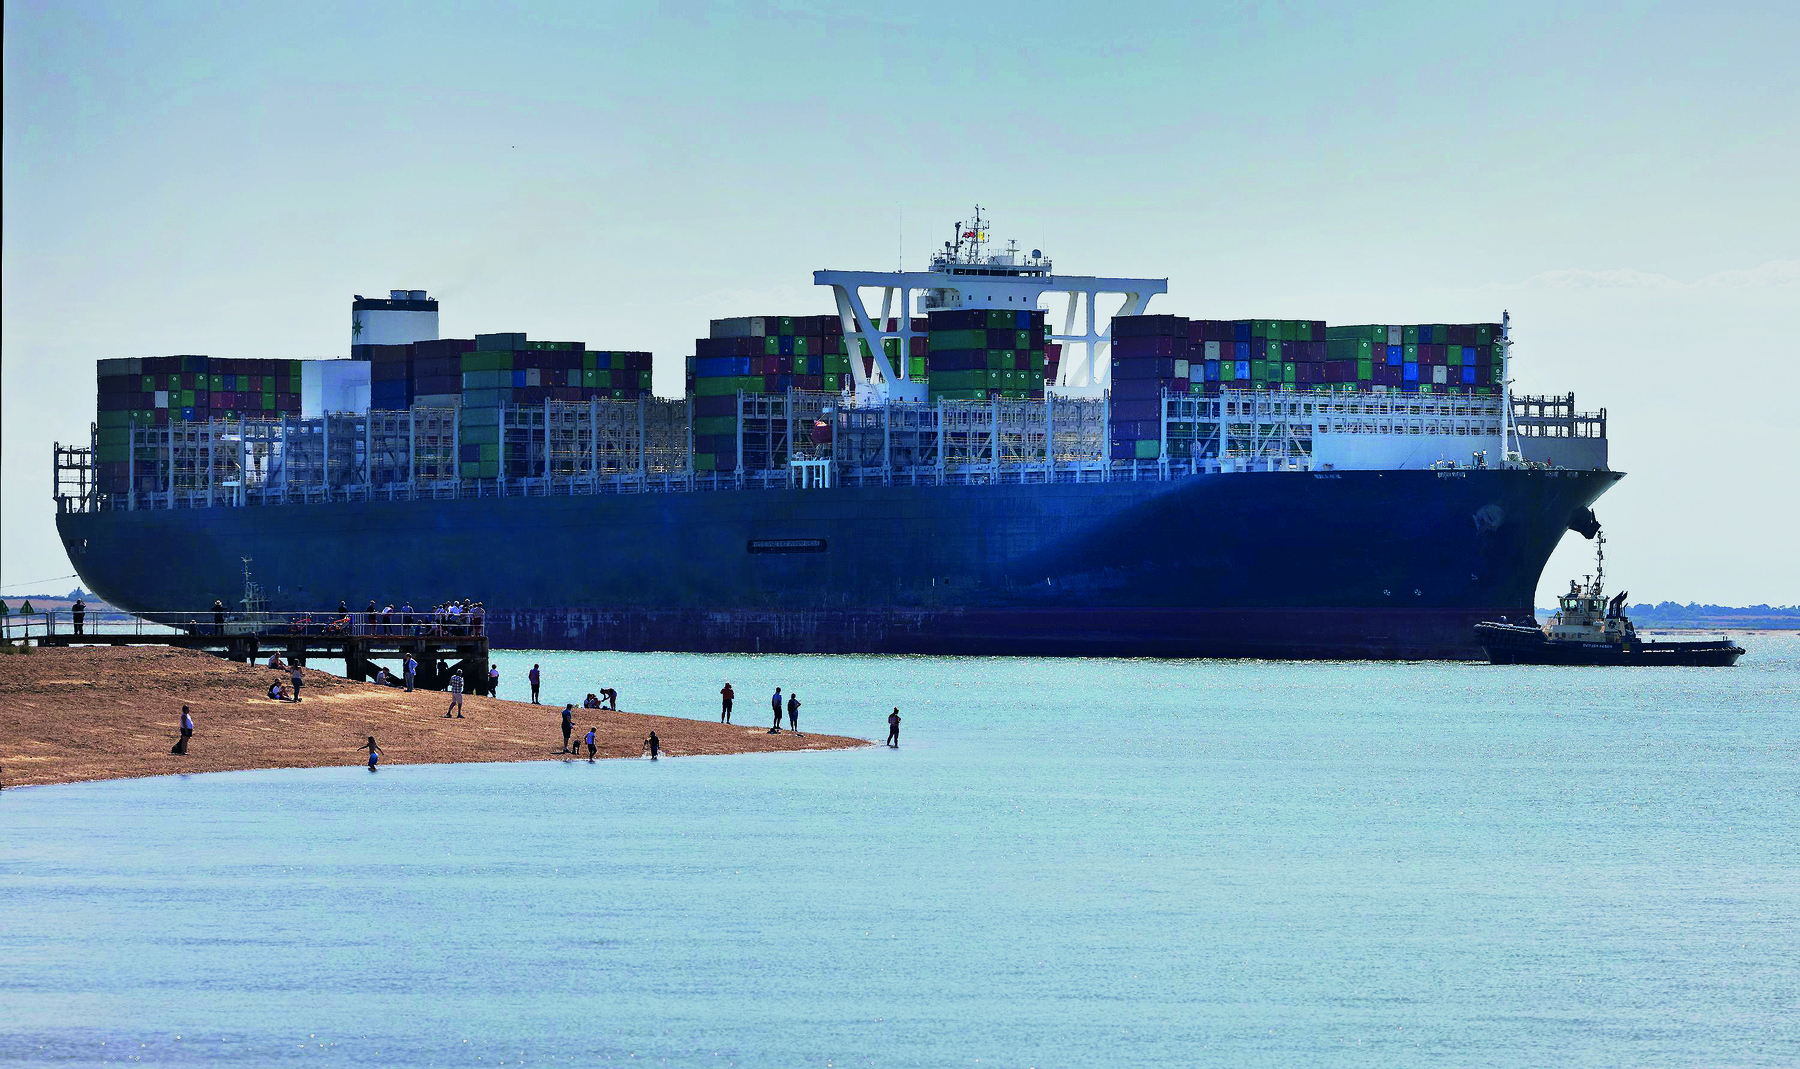 Fotografia. Vista de um grande navio cargueiro atravessando um canal marítimo. Ele carrega diversos contêineres empilhados.